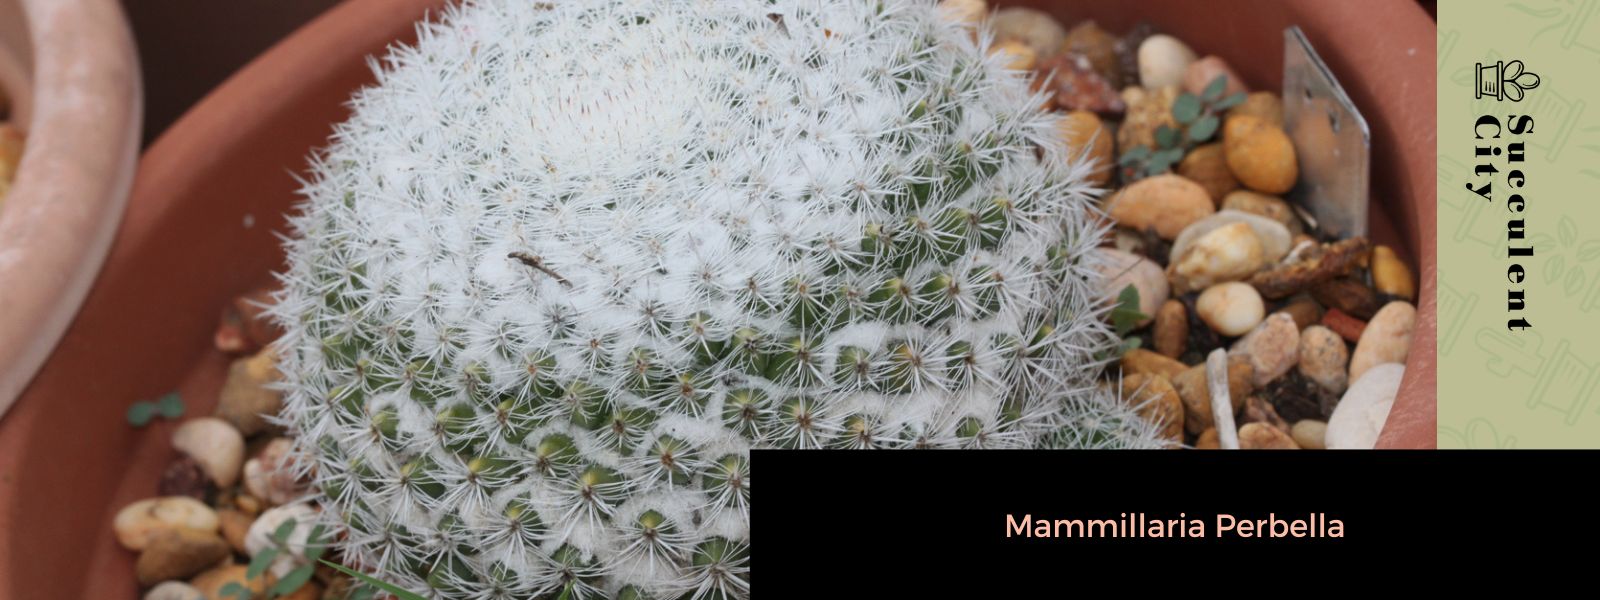 Mammillaria perbella (El cactus ojo de búho)